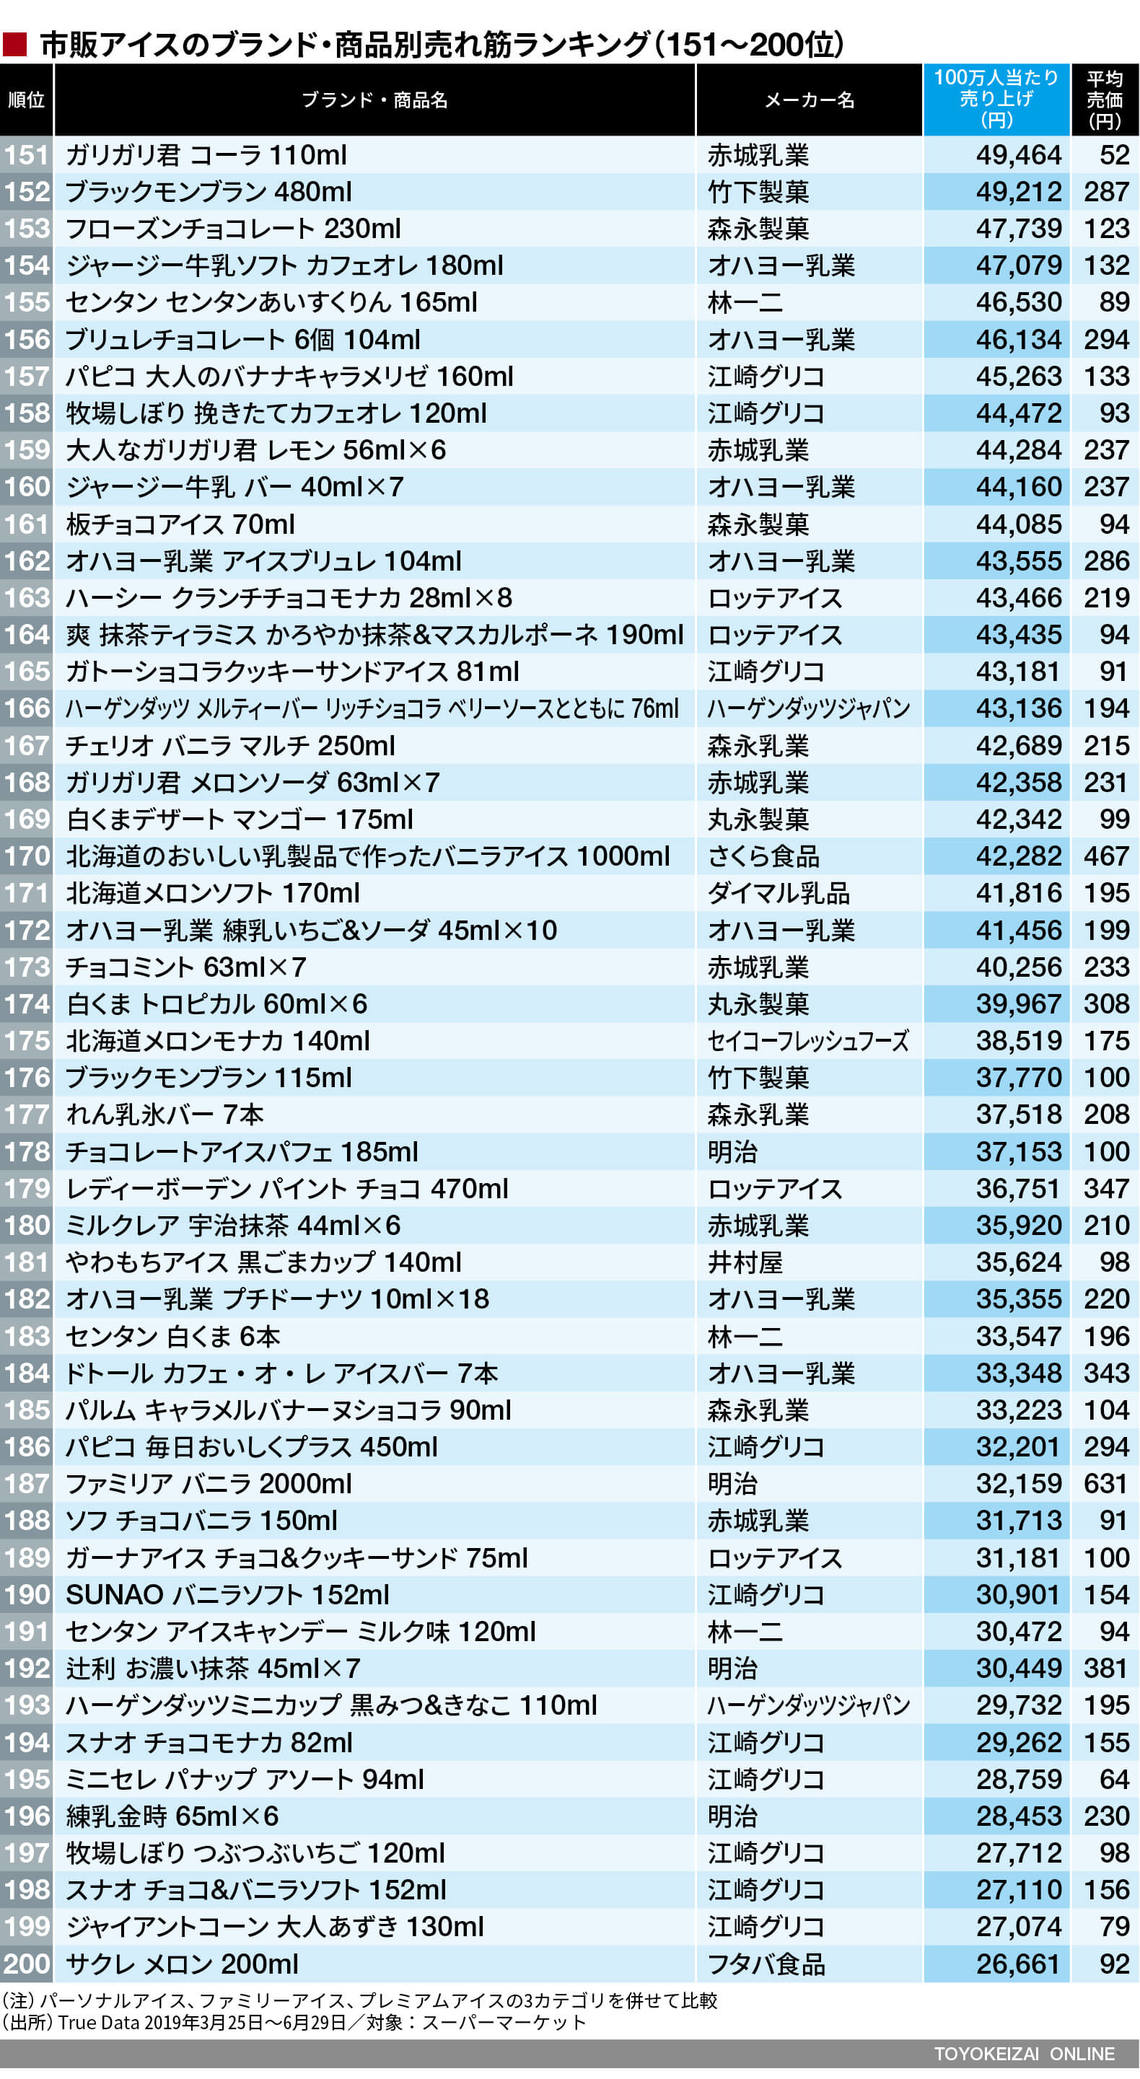 売れ筋アイス トップ0商品ランキング 19 食品 東洋経済オンライン 経済ニュースの新基準